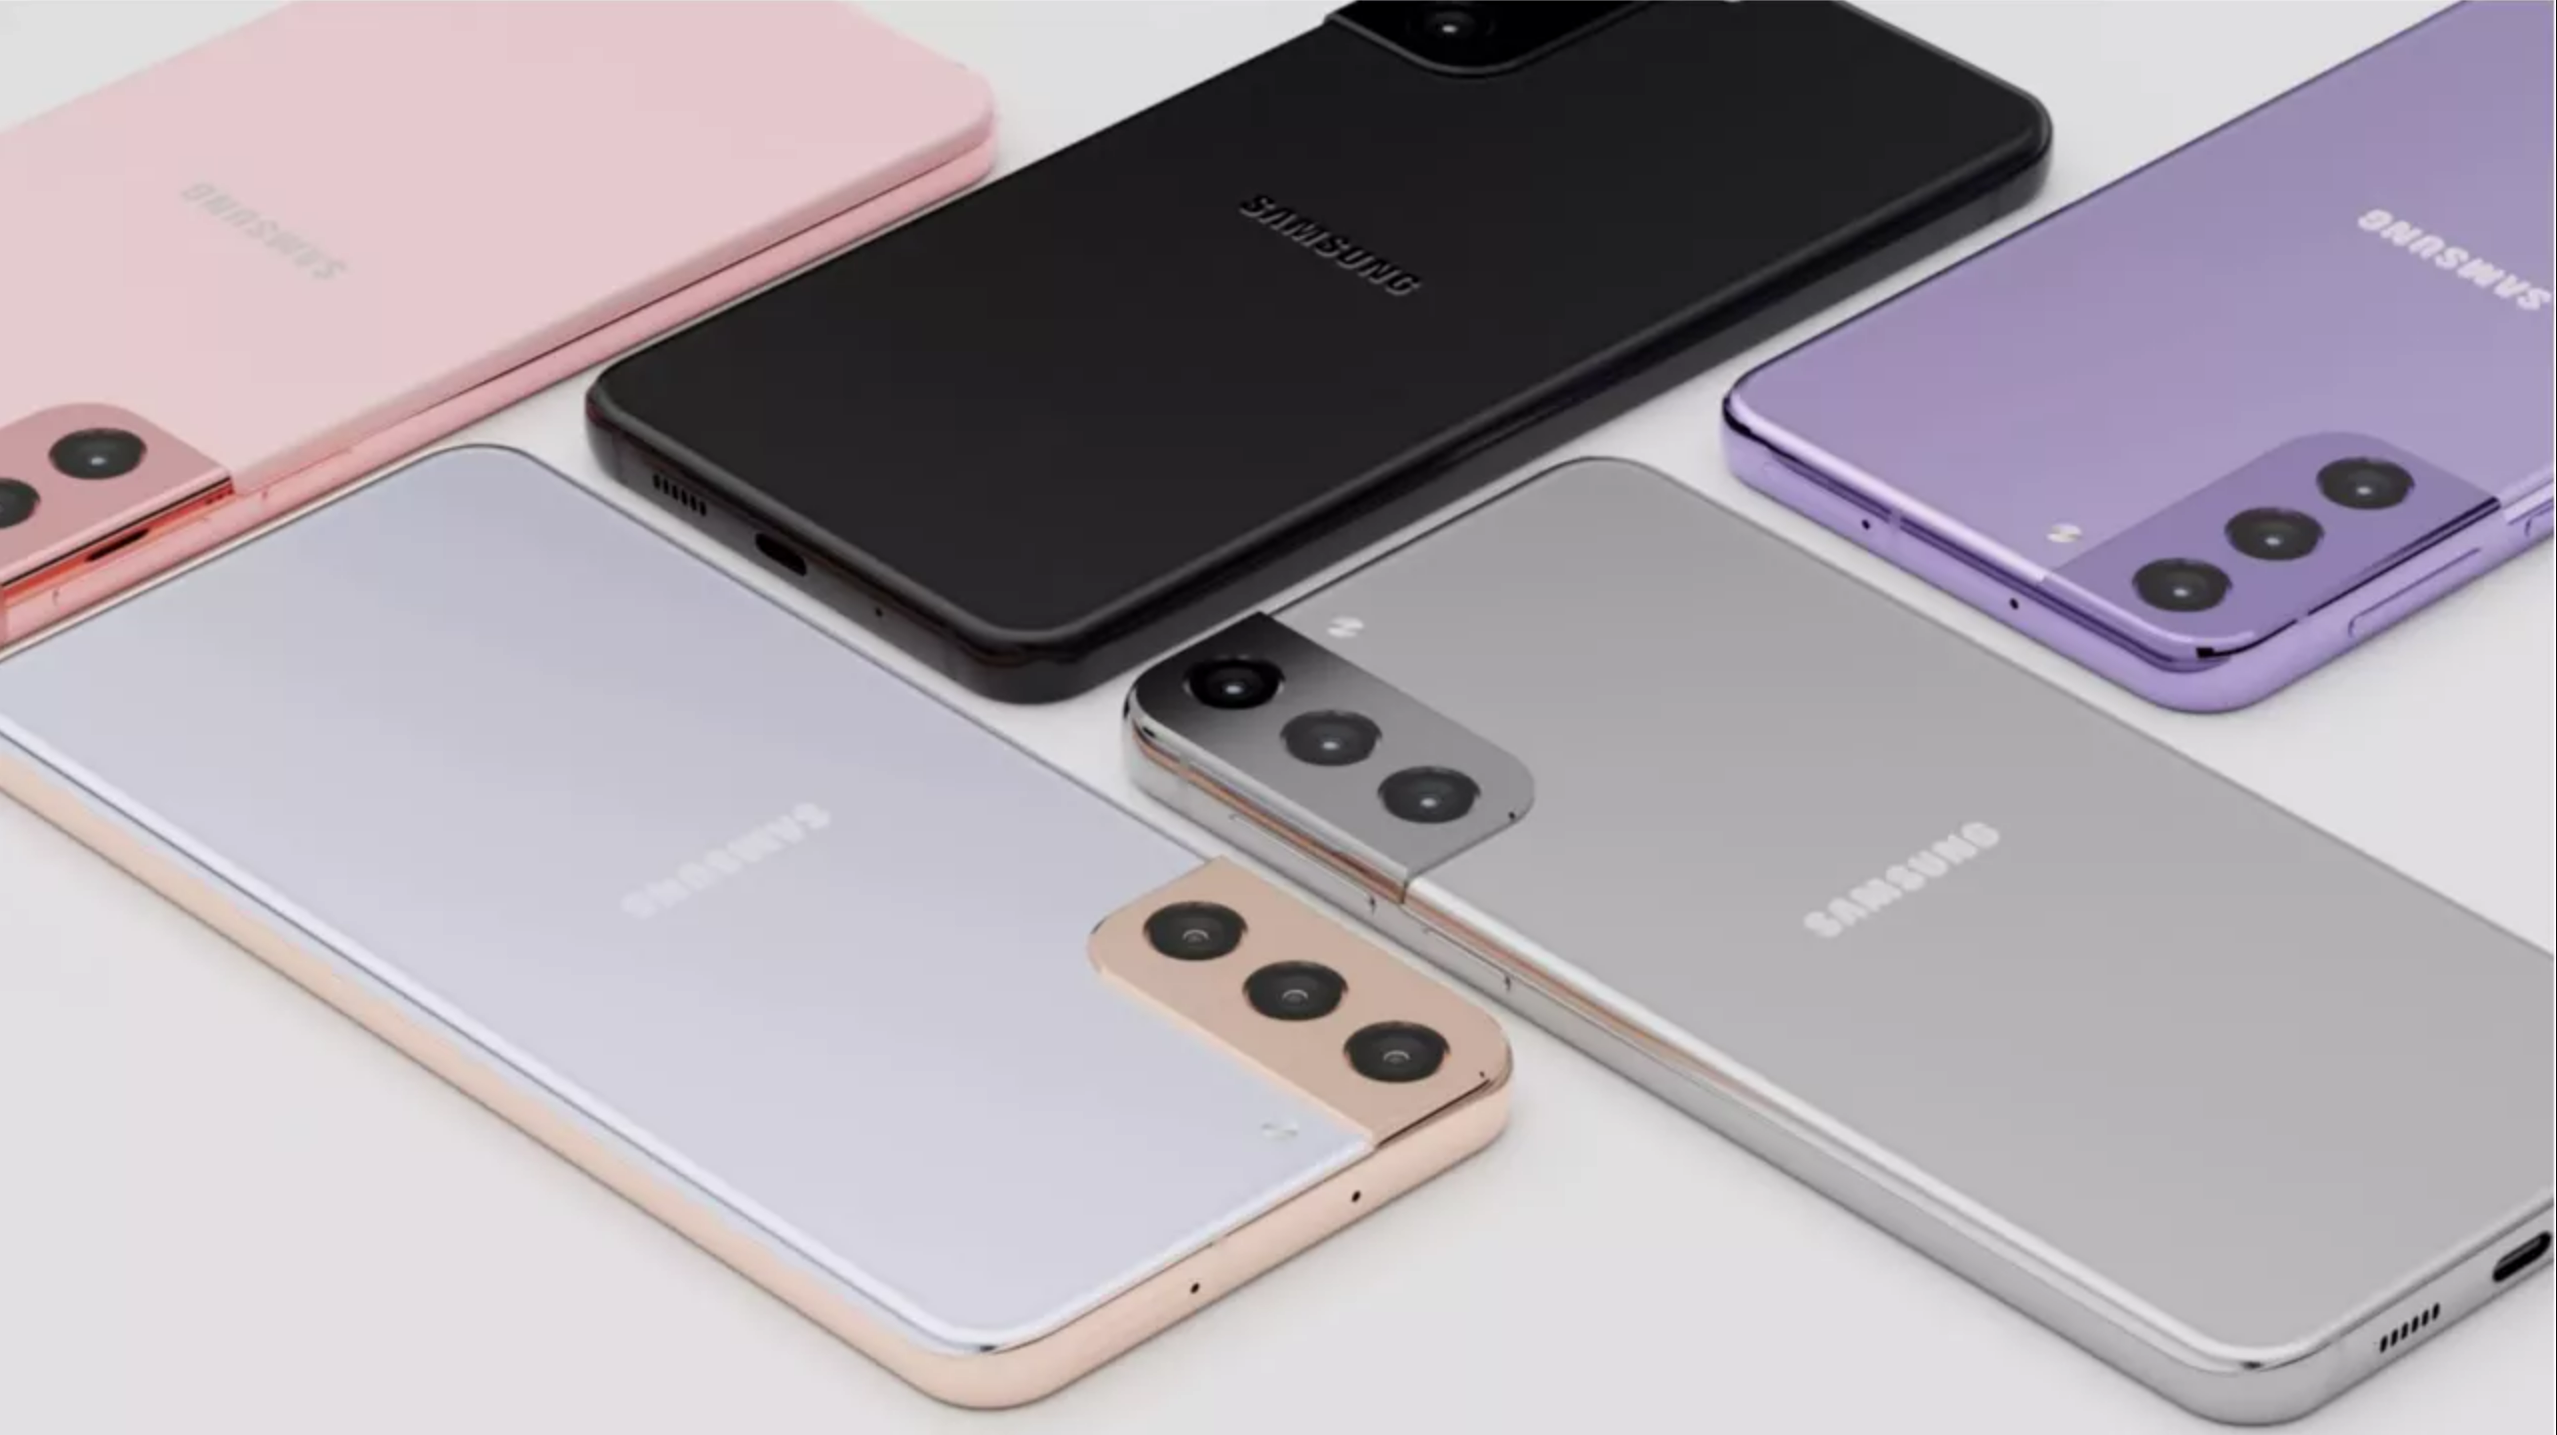 123213123113 - Senza Qualcomm Snapdragon 888, cosa diavolo c’è nel cuore di Samsung?